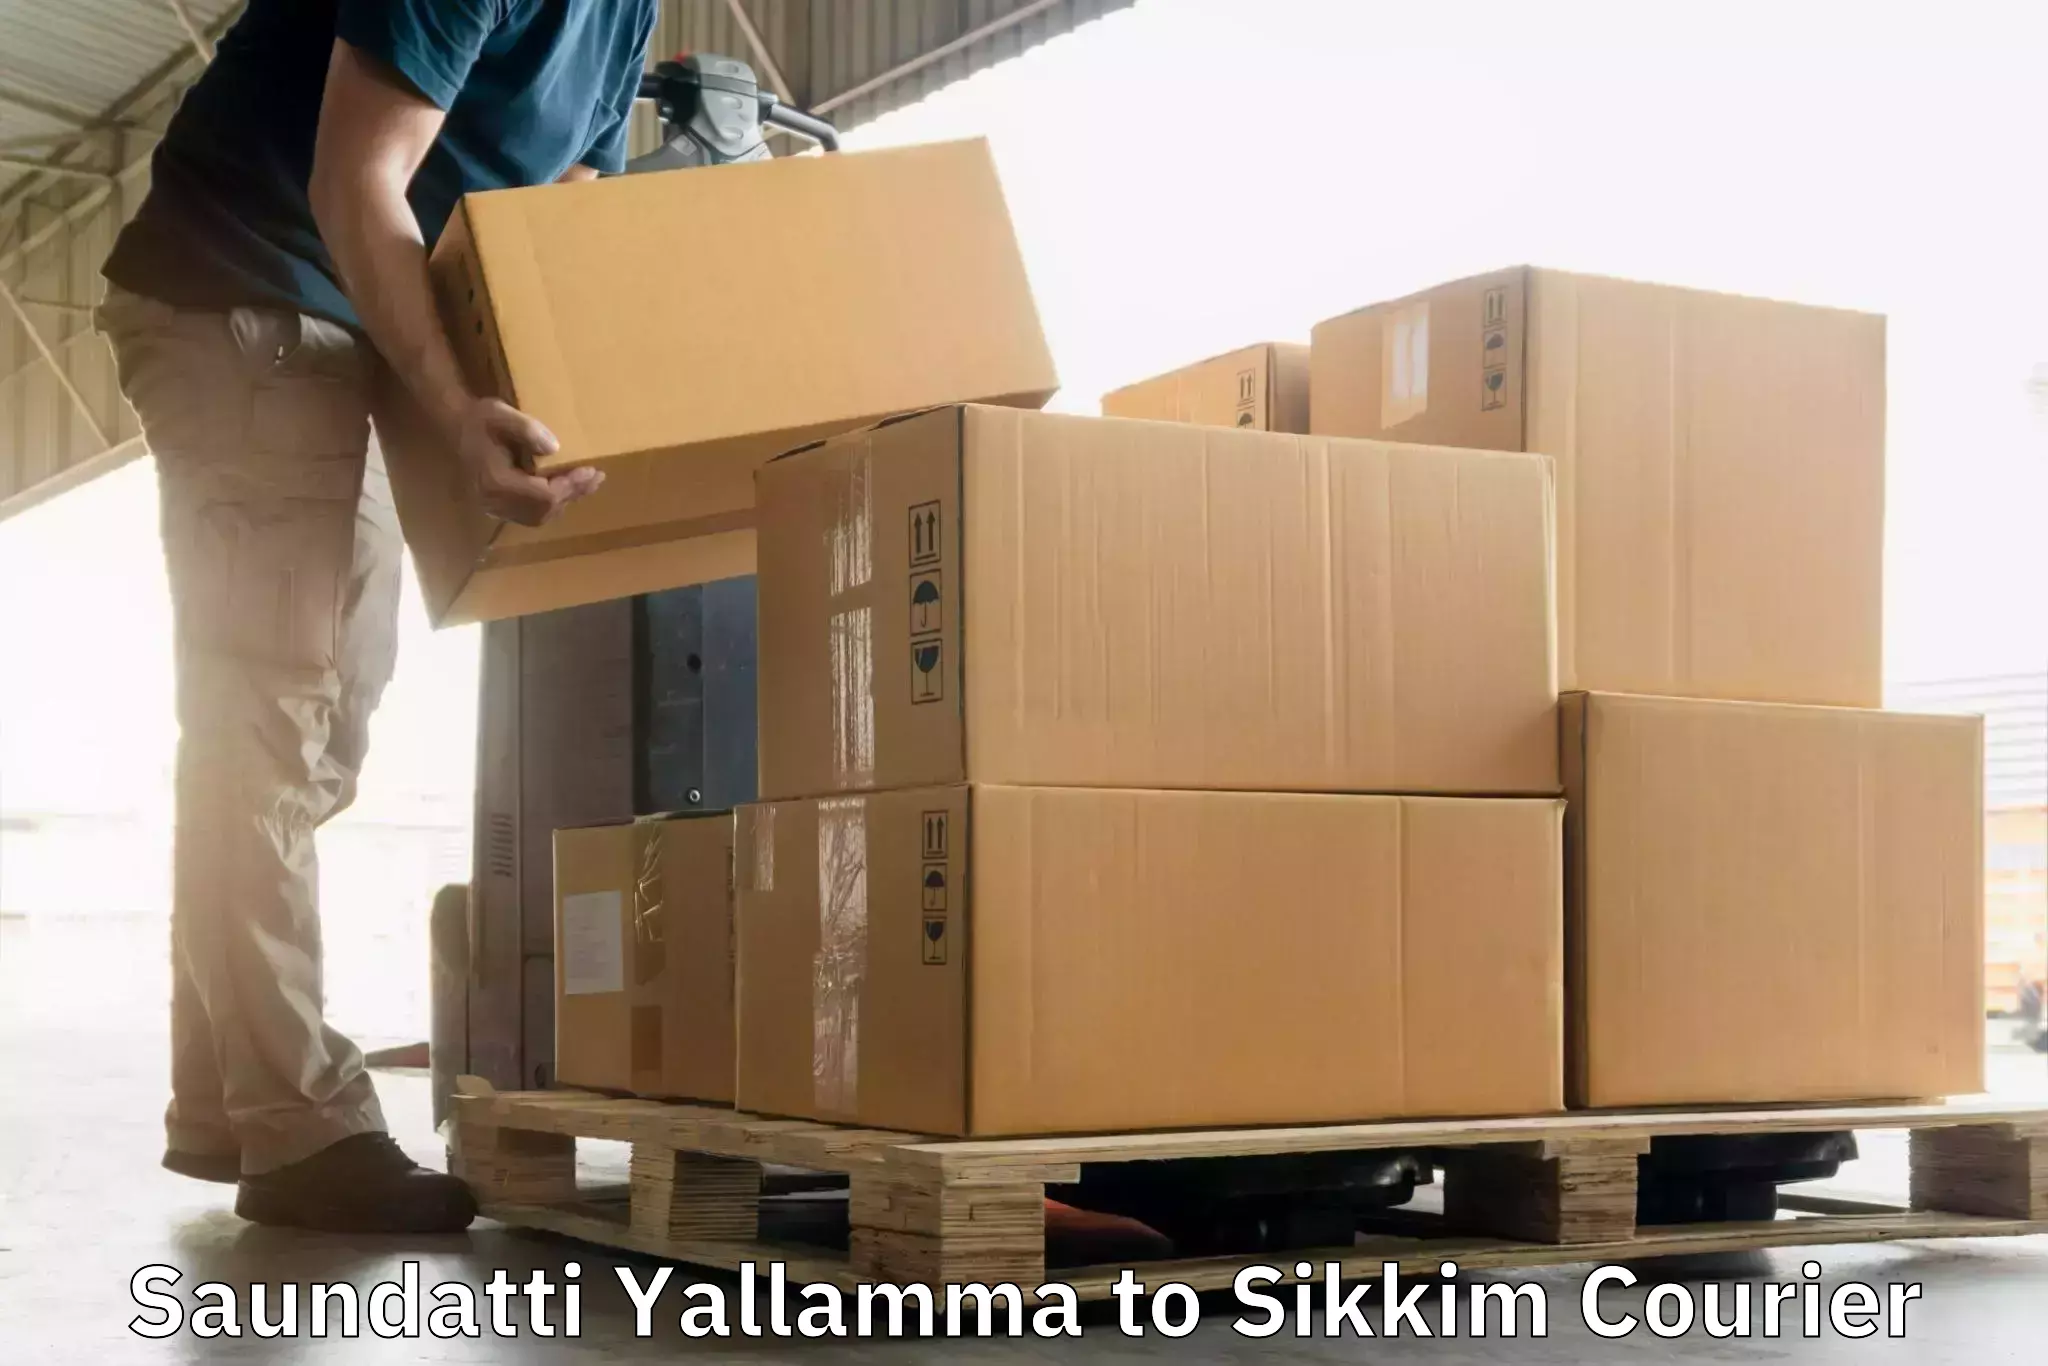 Multi-service courier options Saundatti Yallamma to Rangpo